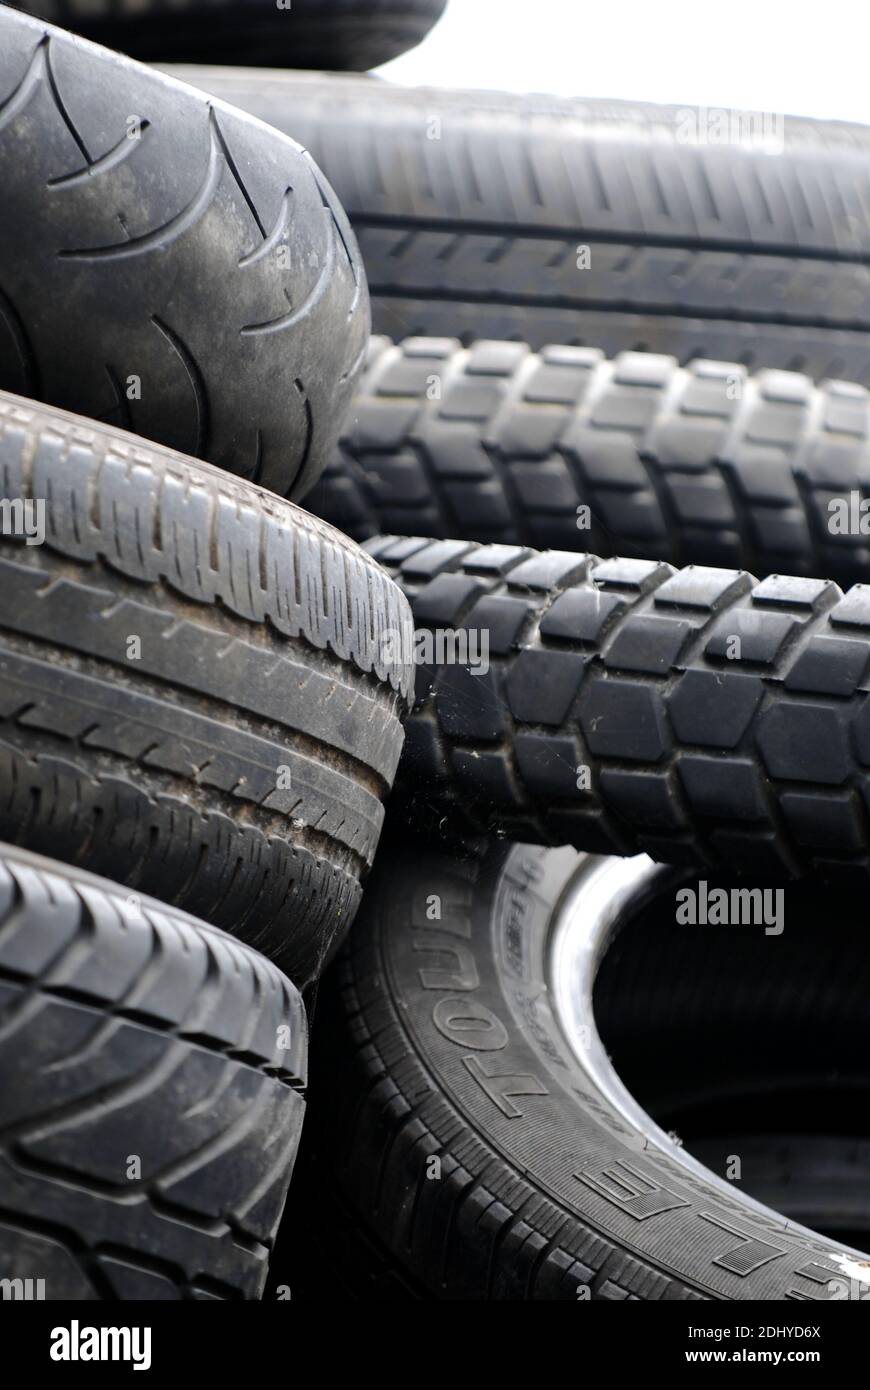 Alte Reifen, Autoreifen Stock Photo - Alamy